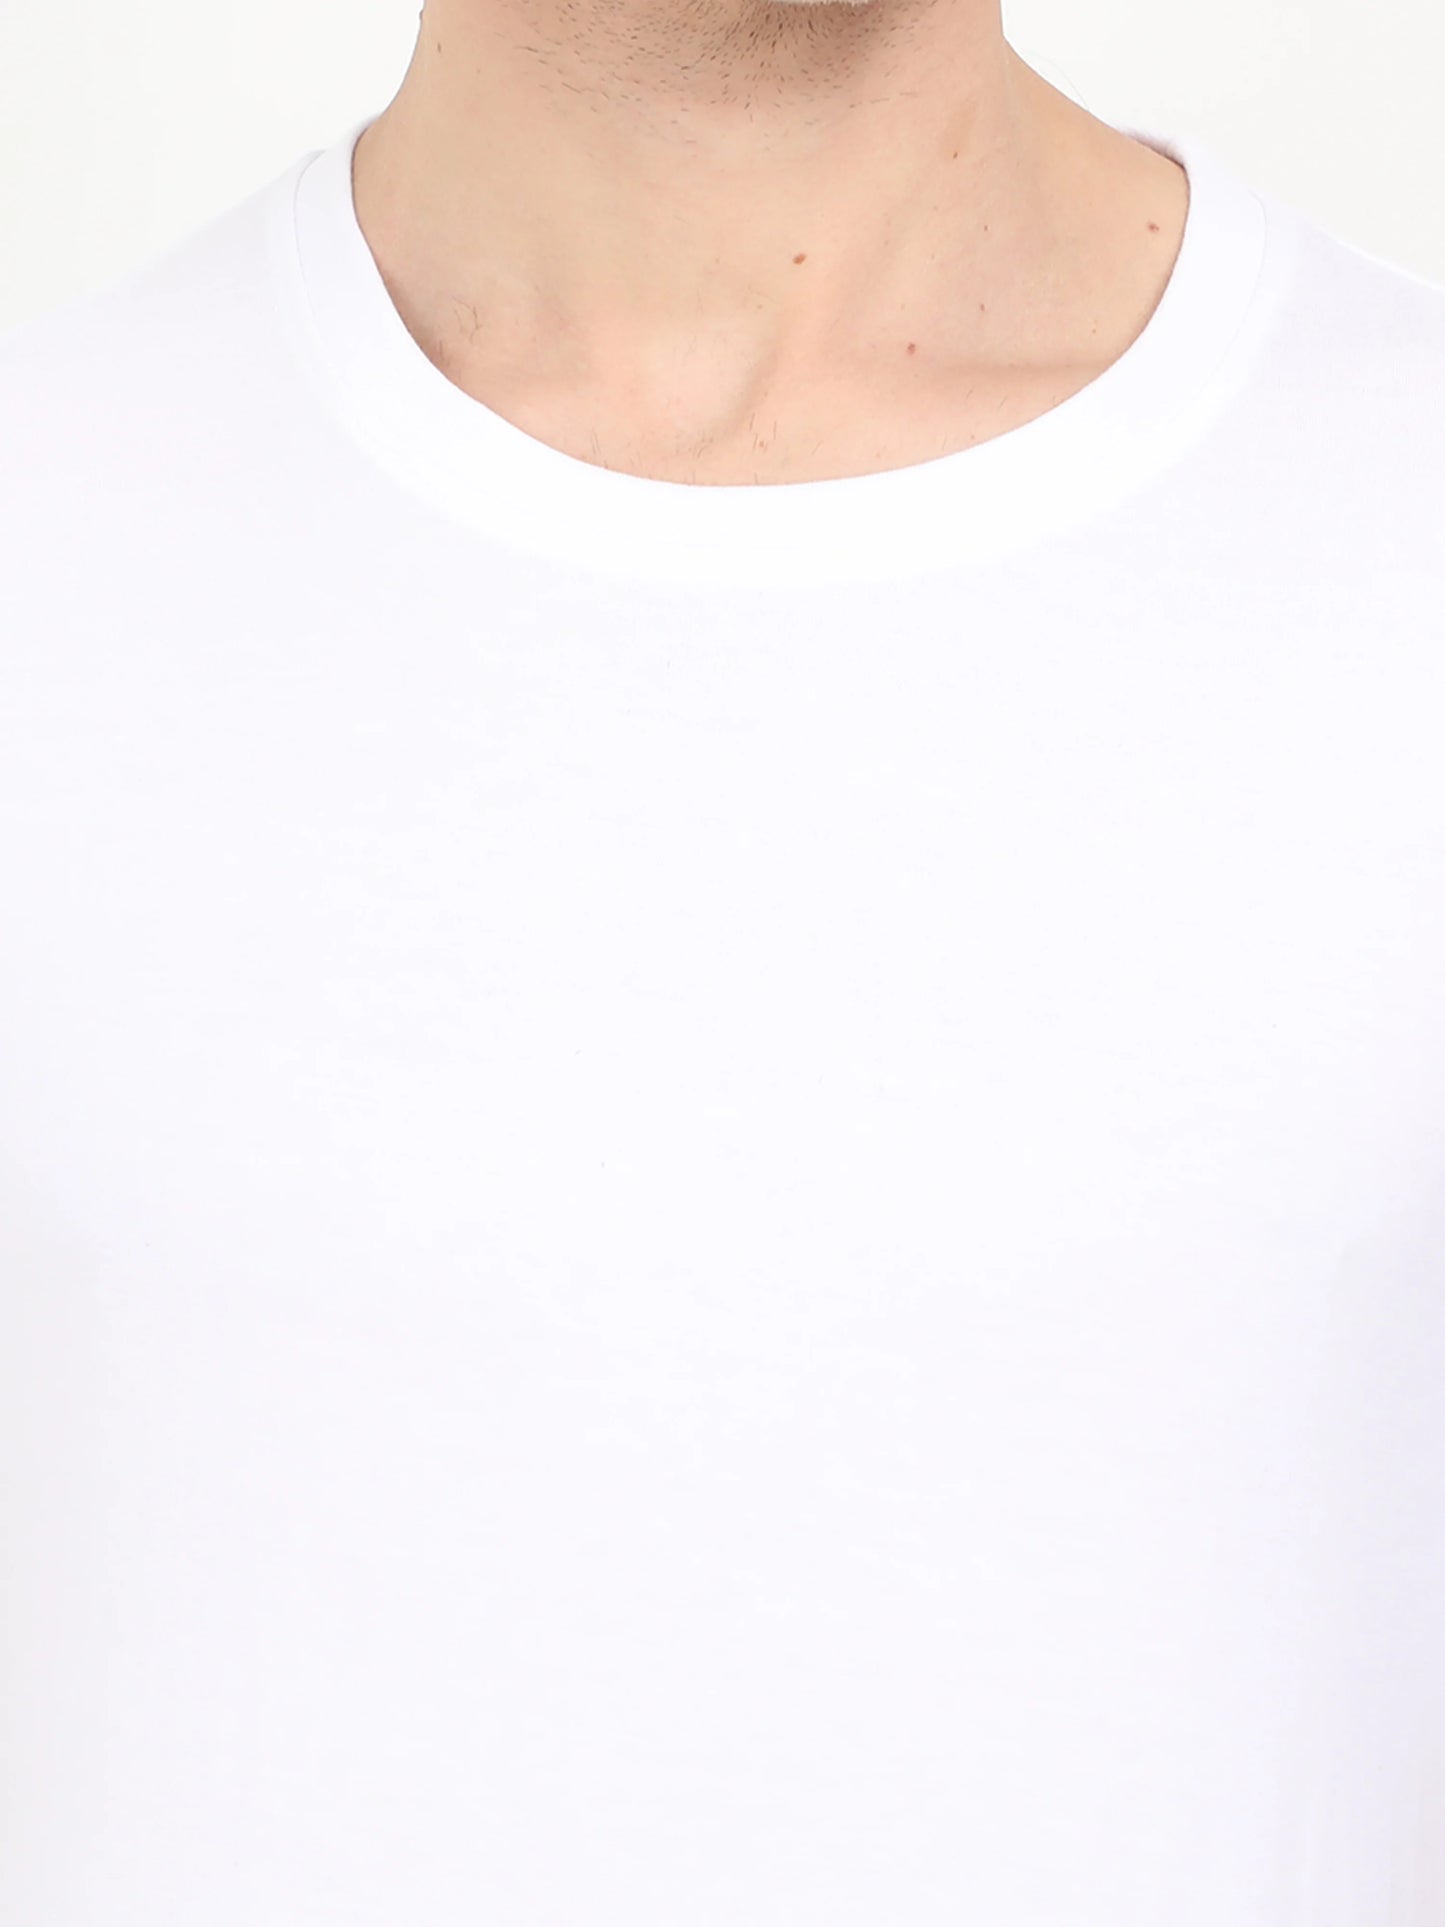 Men's Cotton Plain Round Neck Half Sleeve White Color T-Shirt